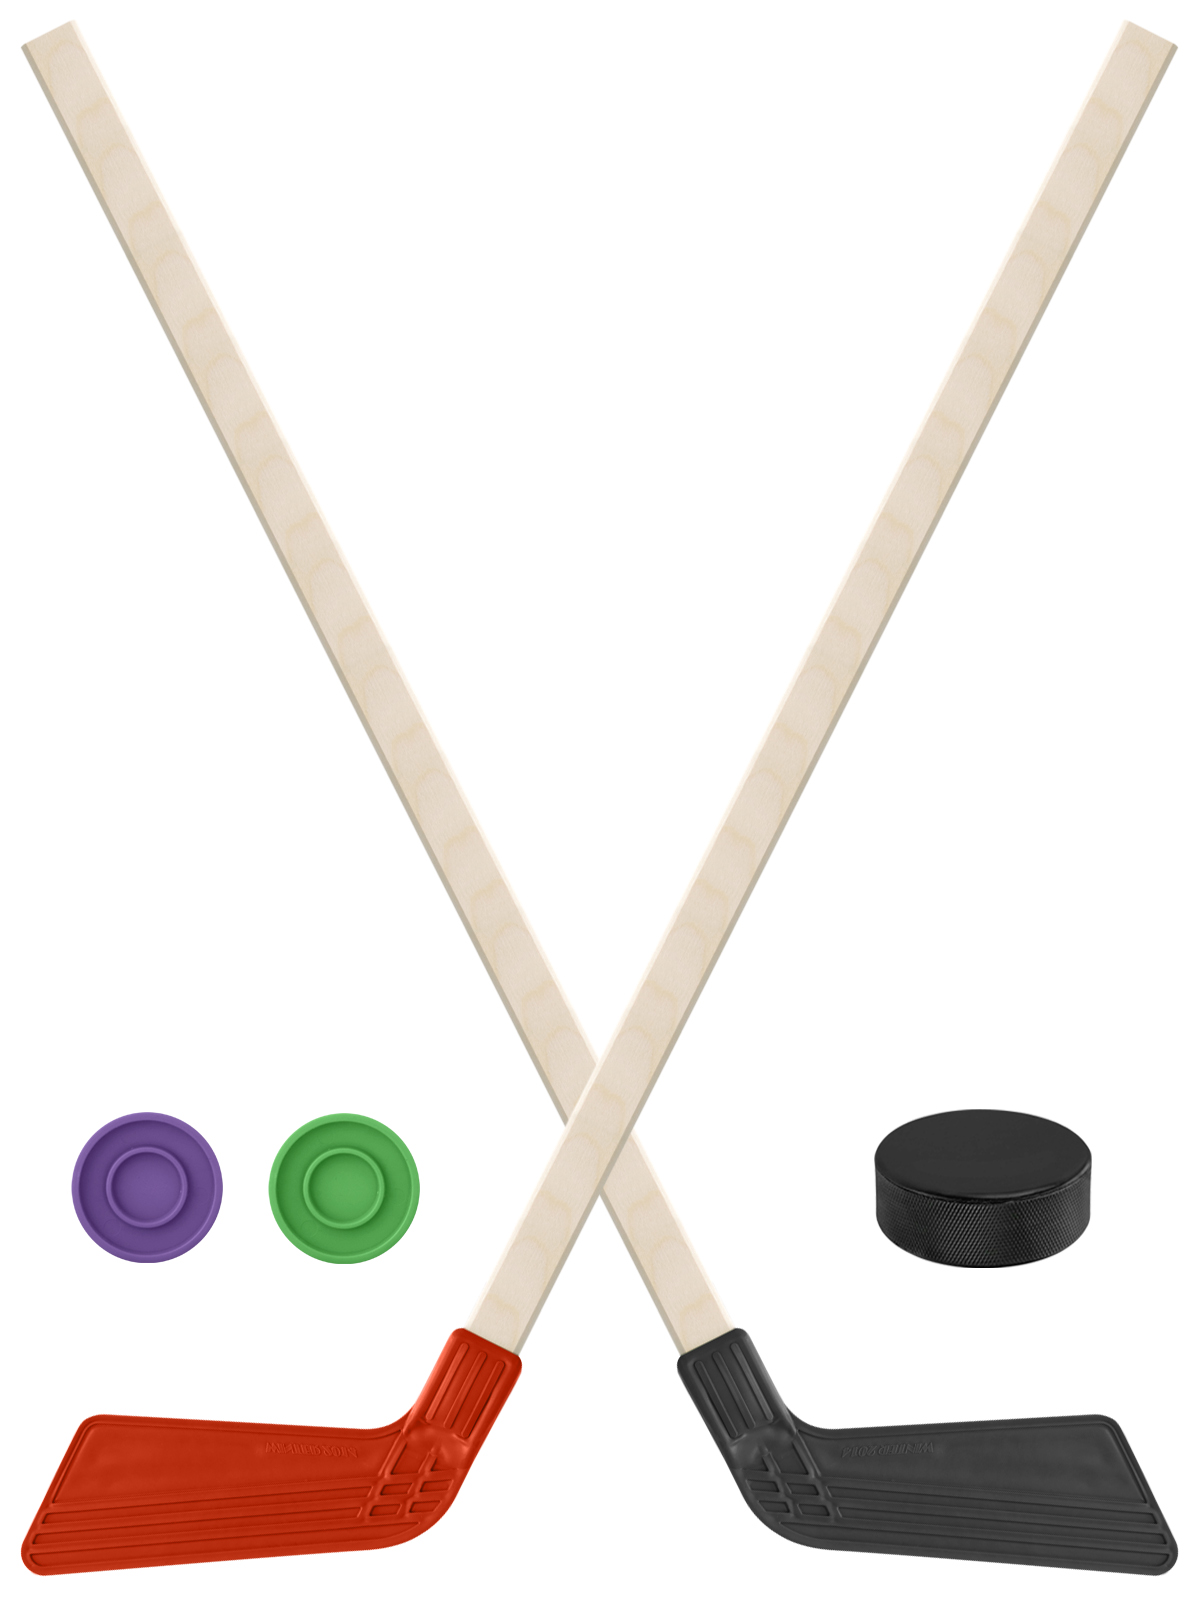 Детский хоккейный набор Задира-плюс  Клюшка хоккейная 2шт(красн,чёрн)+2 шайбы+Шайба 75 мм детский хоккейный набор задира плюс 3 в 1 клюшка хоккейная 80см красн черн зел 3 шайбы